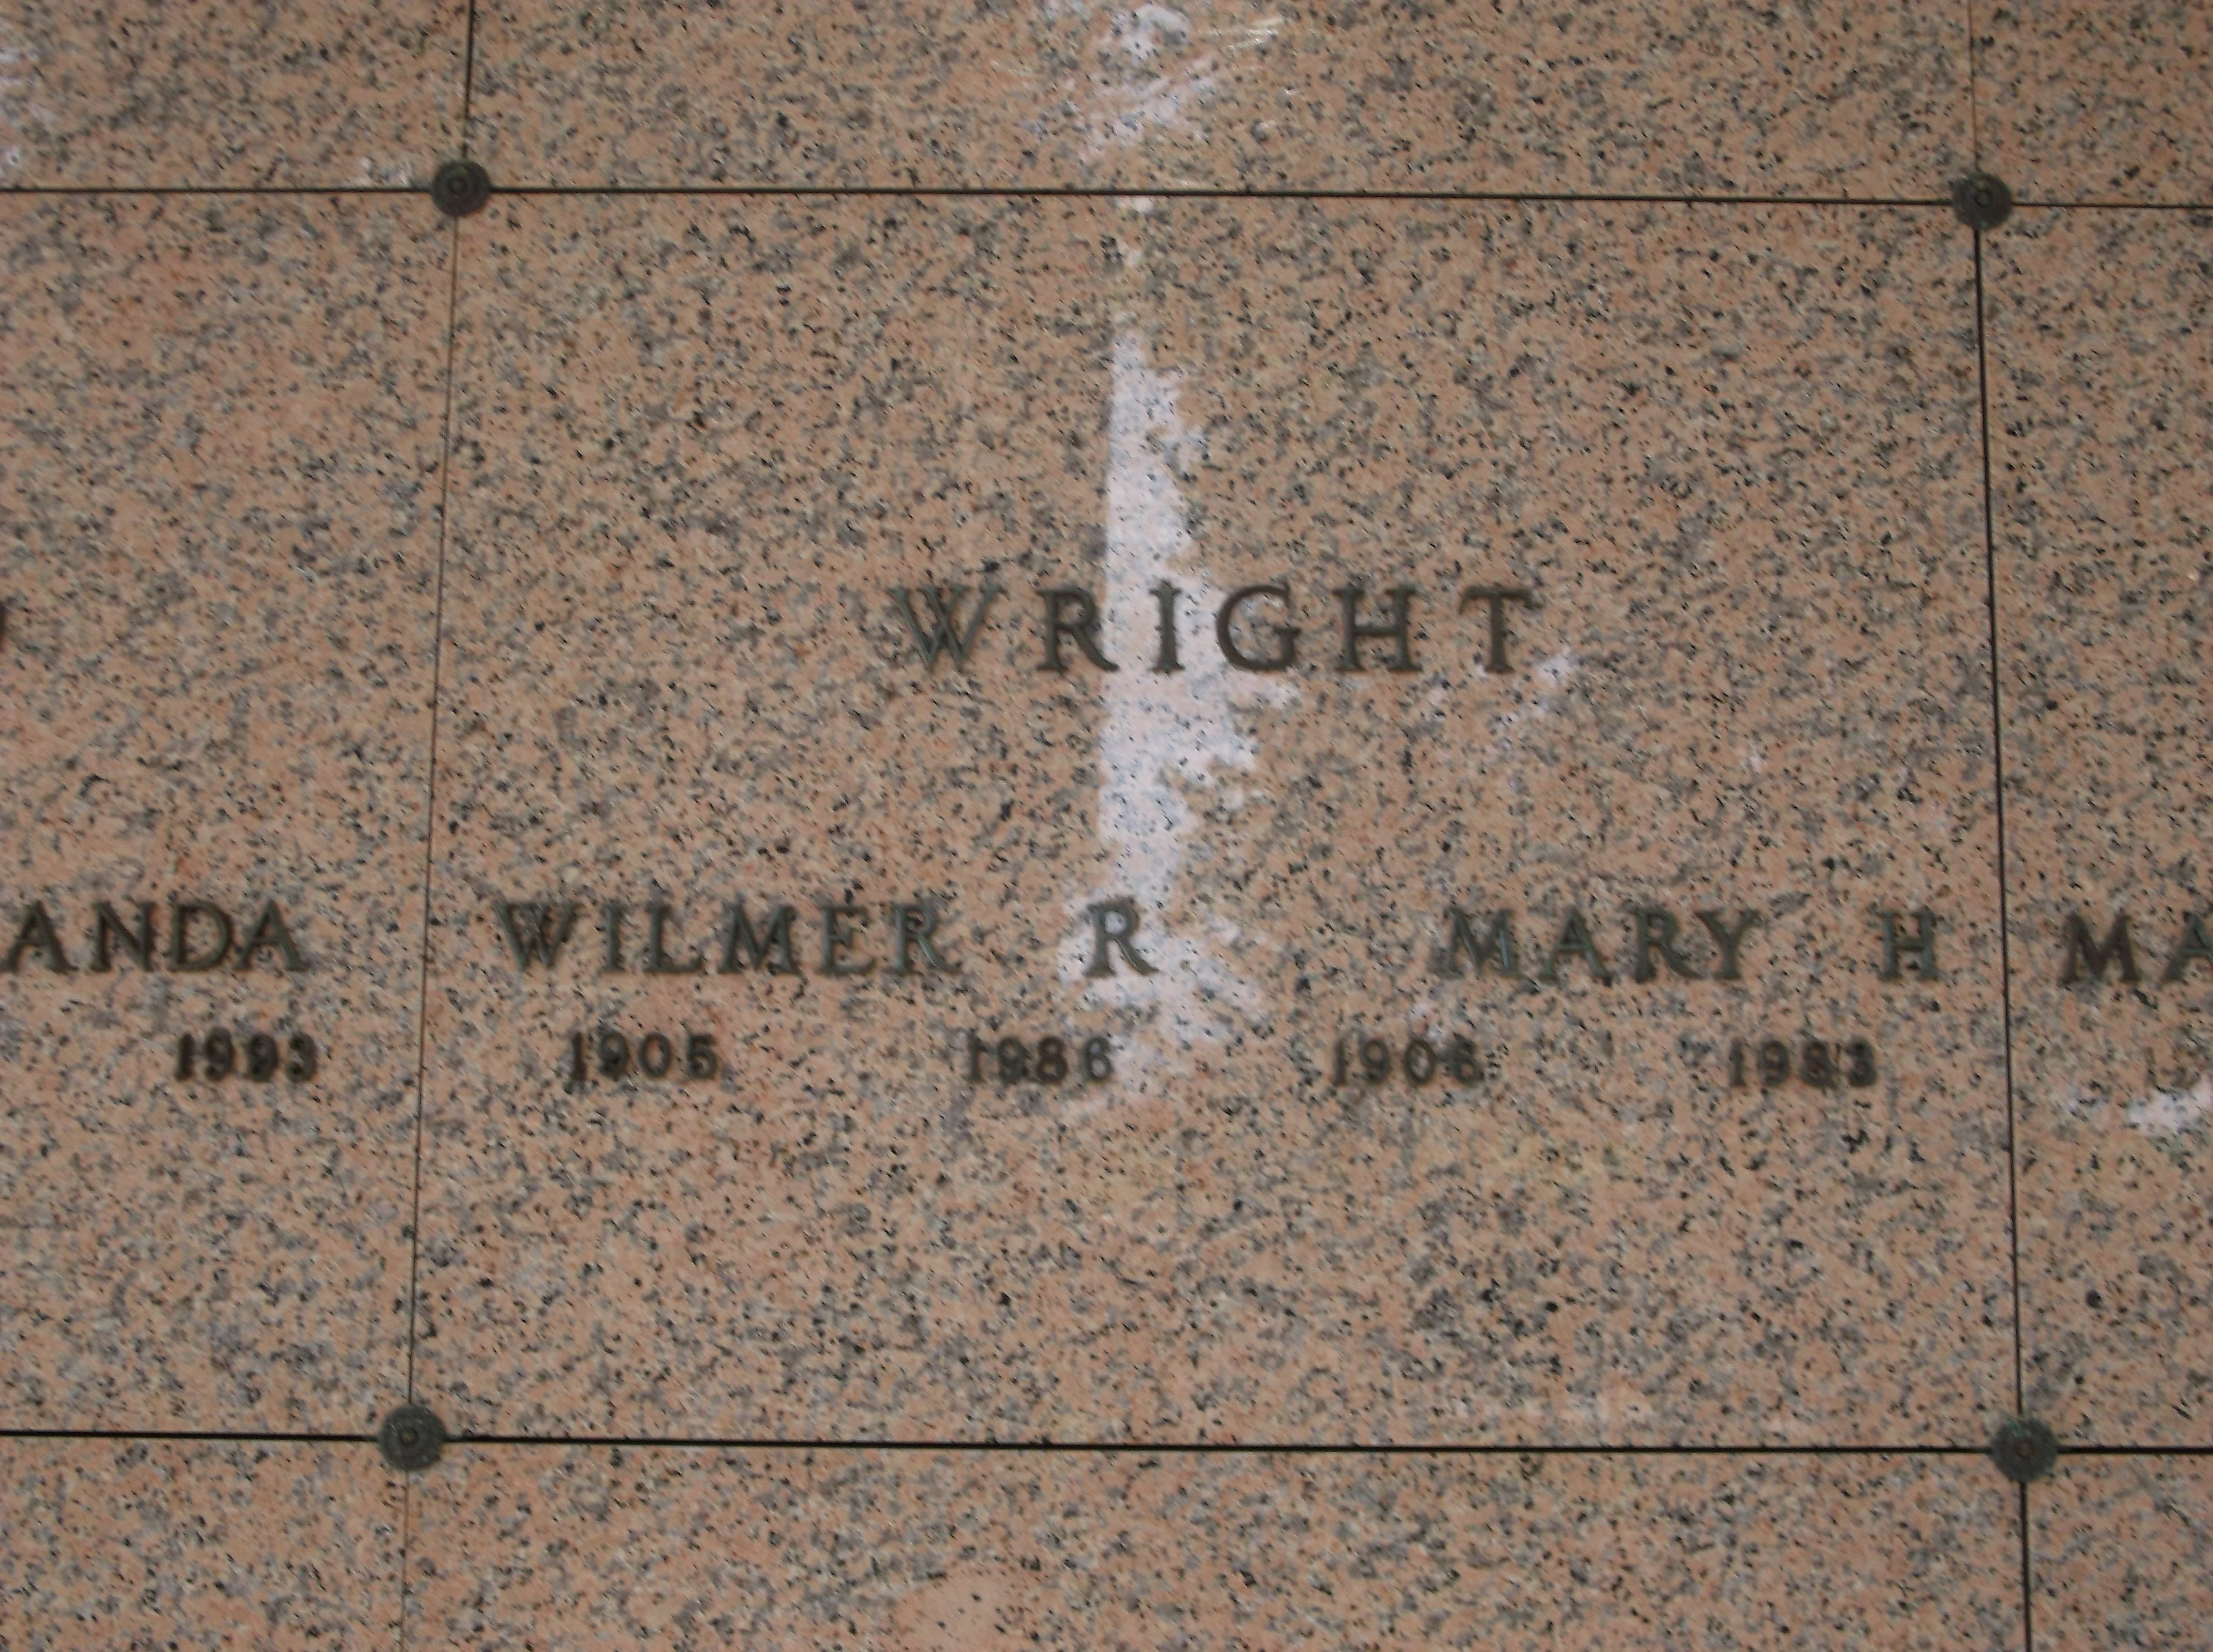 Mary H Wright